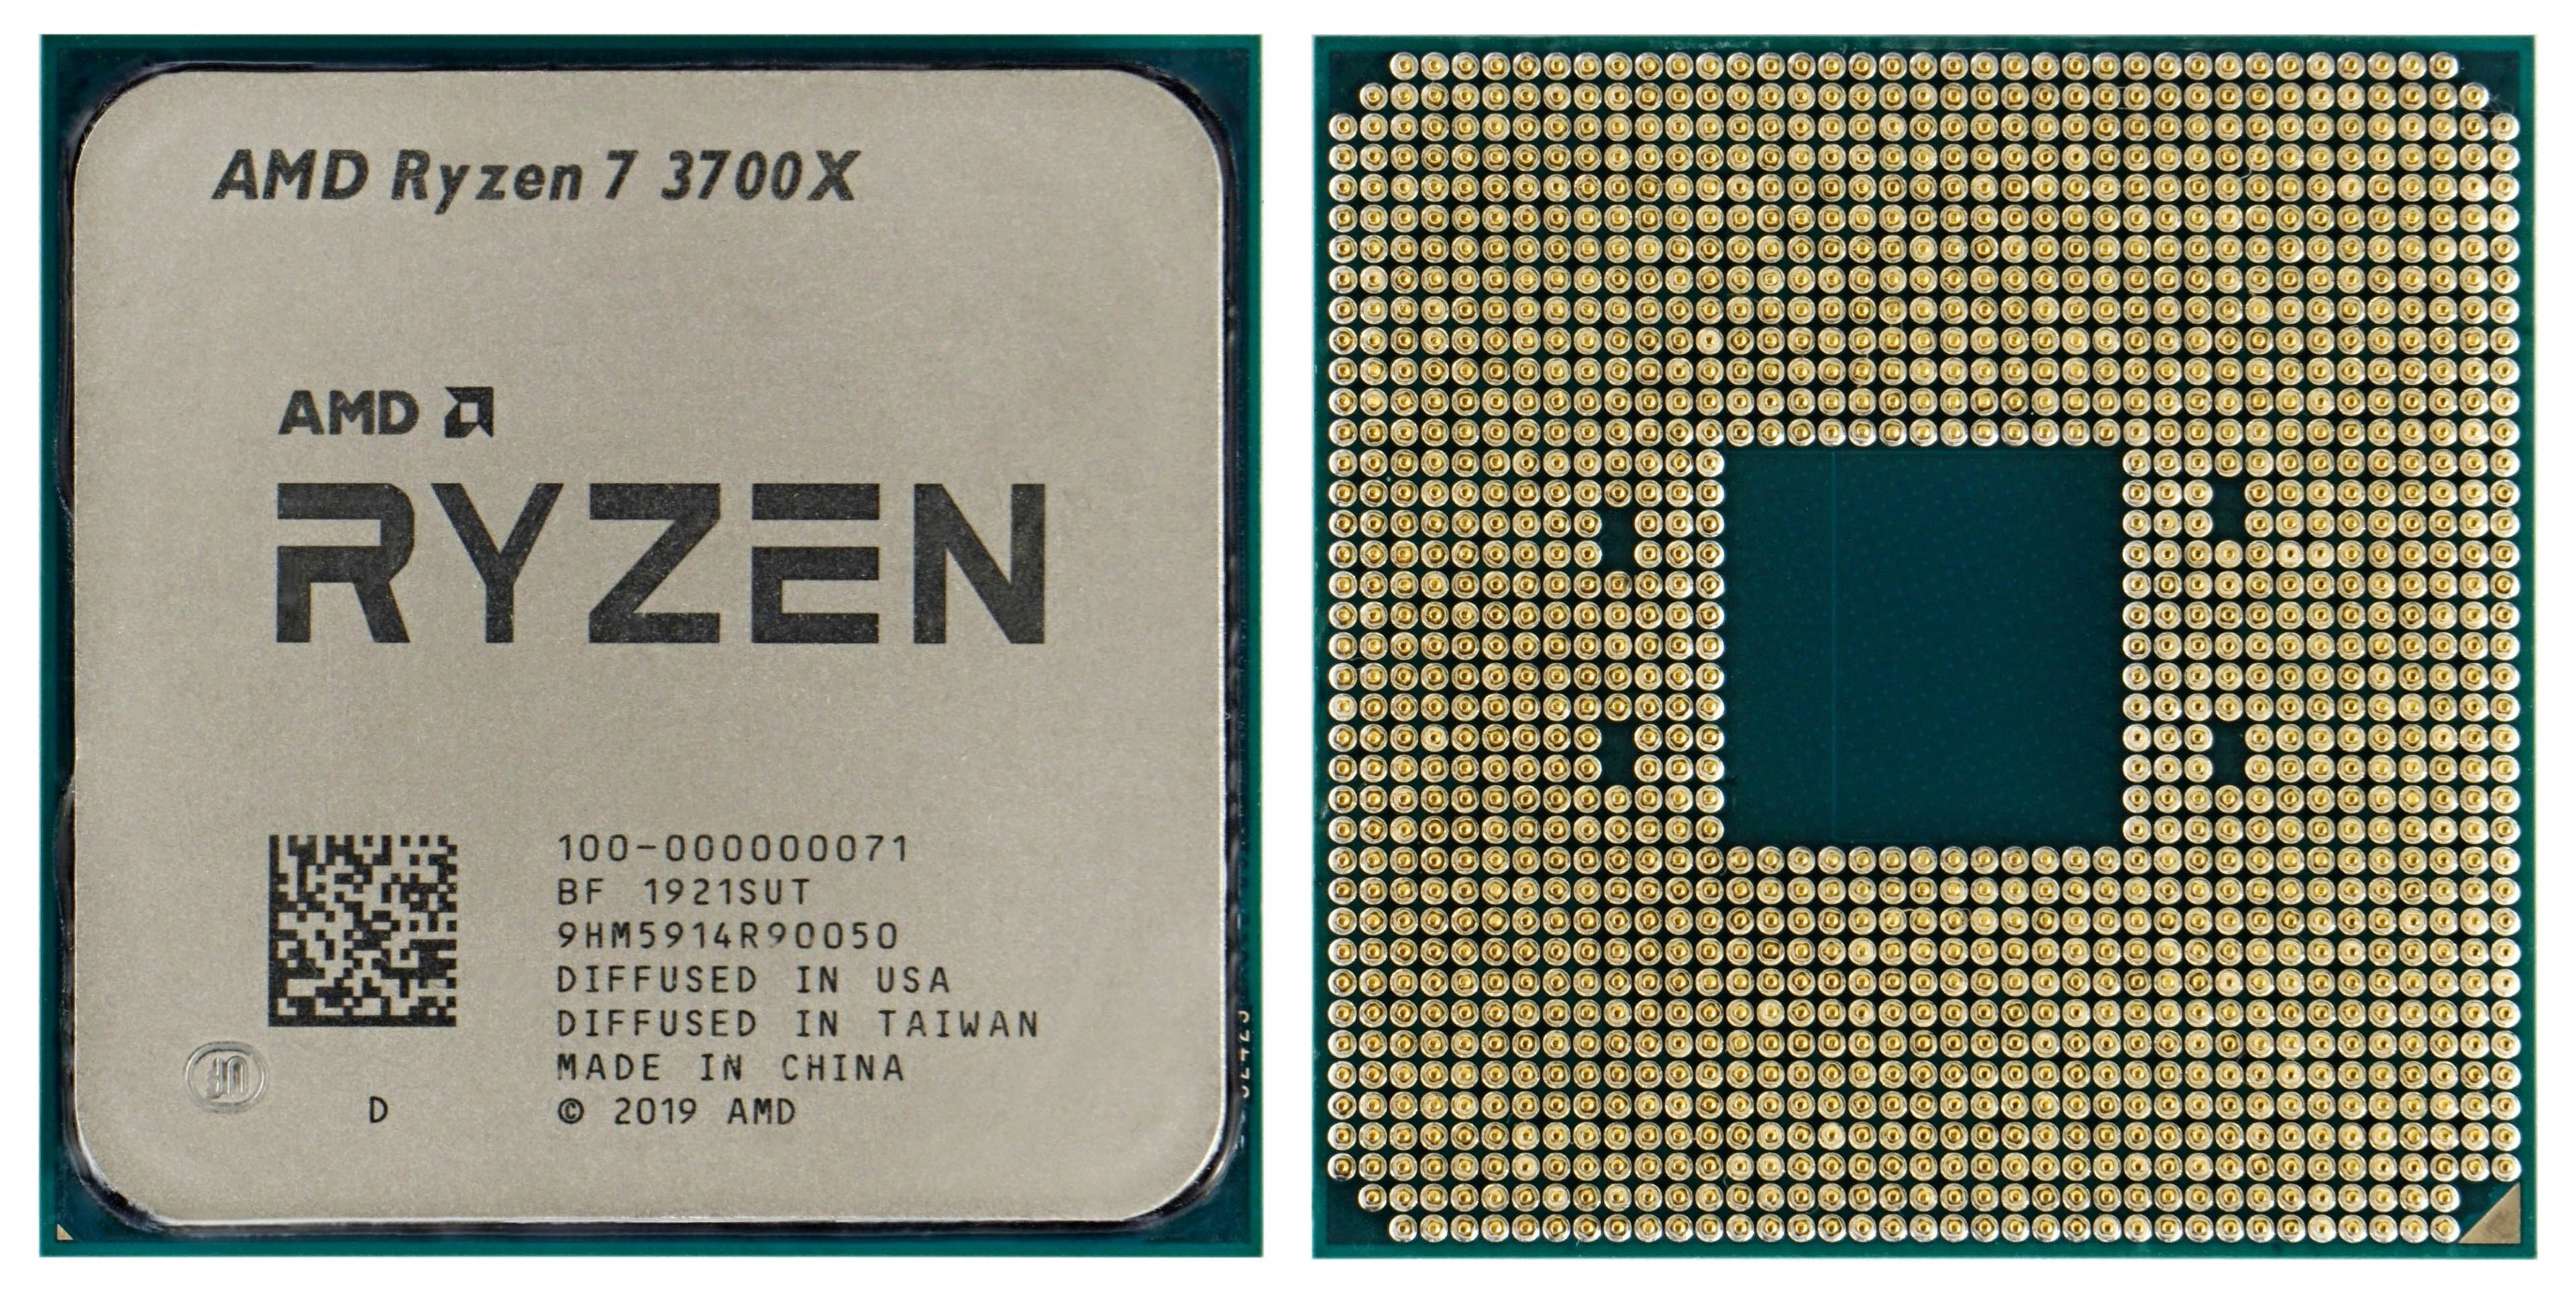 Volg ons mengen Uitbreiden Review of AMD Ryzen 7 3700X processor. Zen 2 still rocks - HWCooling.net